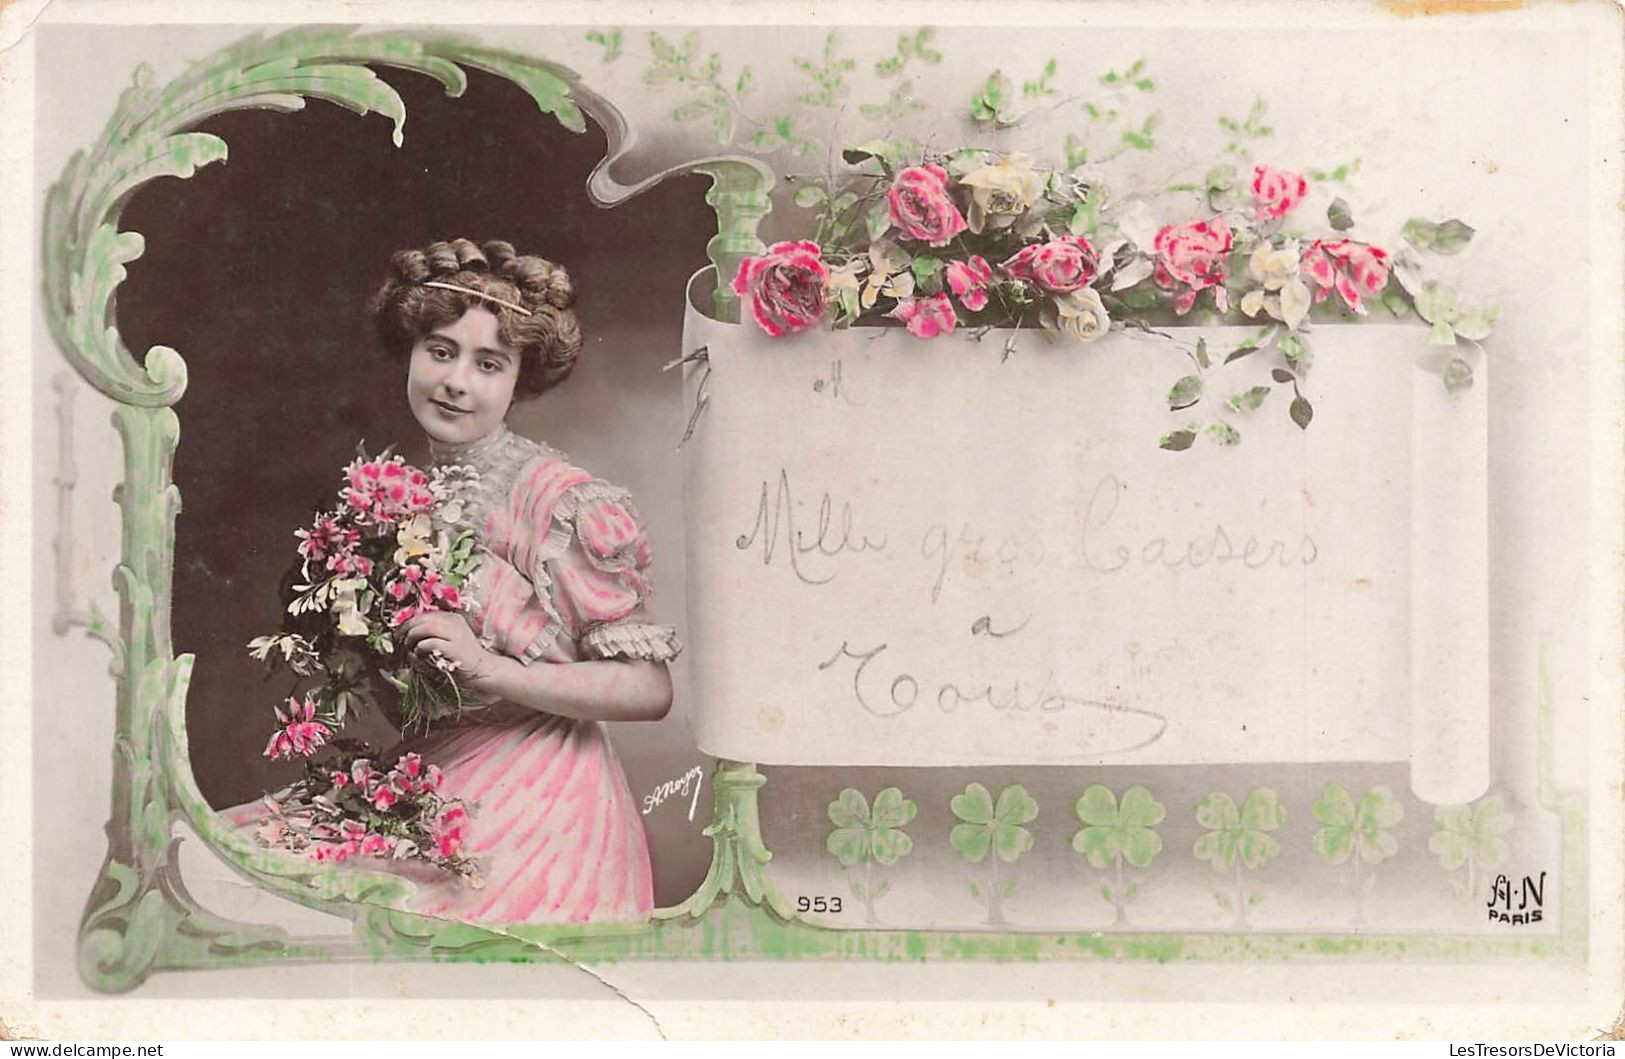 FANTAISIES - Mille Gros Baisers - Femme Avec Des Fleurs - Carte Postale Ancienne - Donne